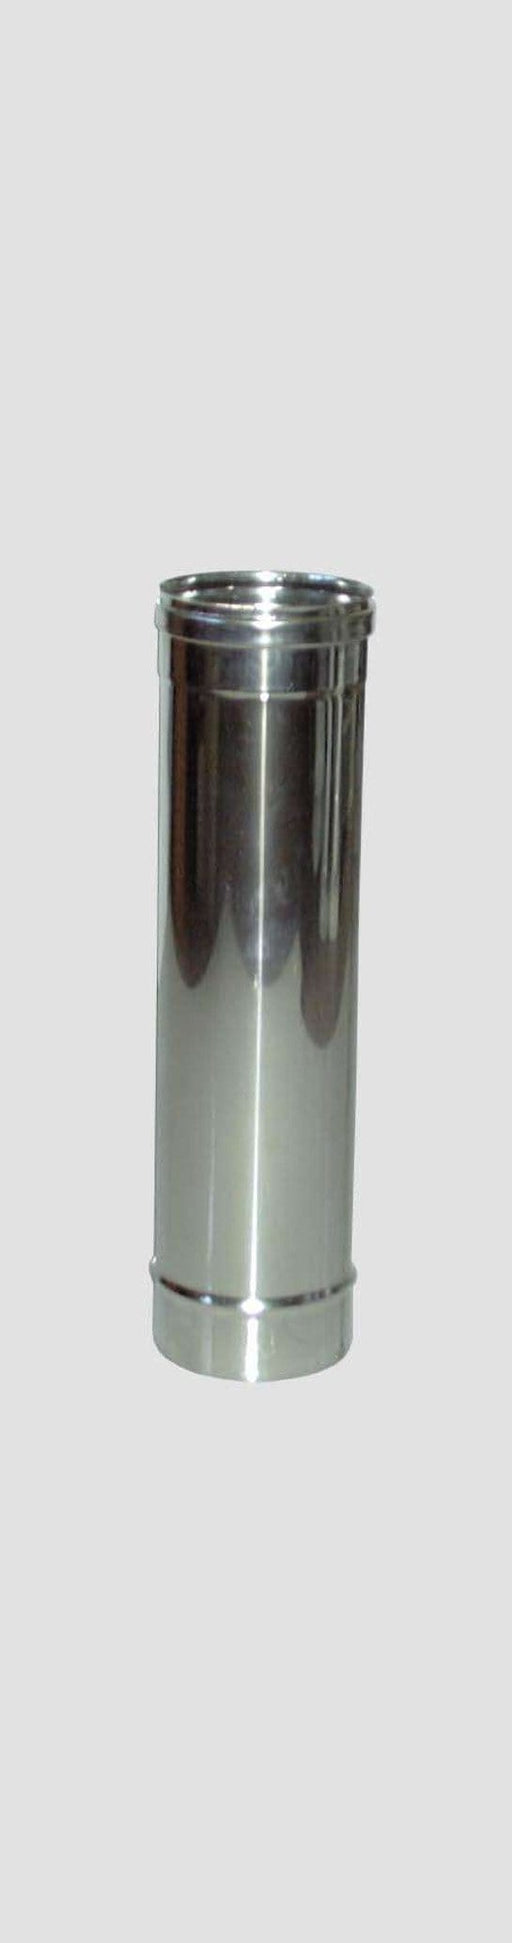 Tubo Diritto Inox AISI 304 per Stufe - Altezza 100 cm - Diametro 10cm MillStore (2499313)